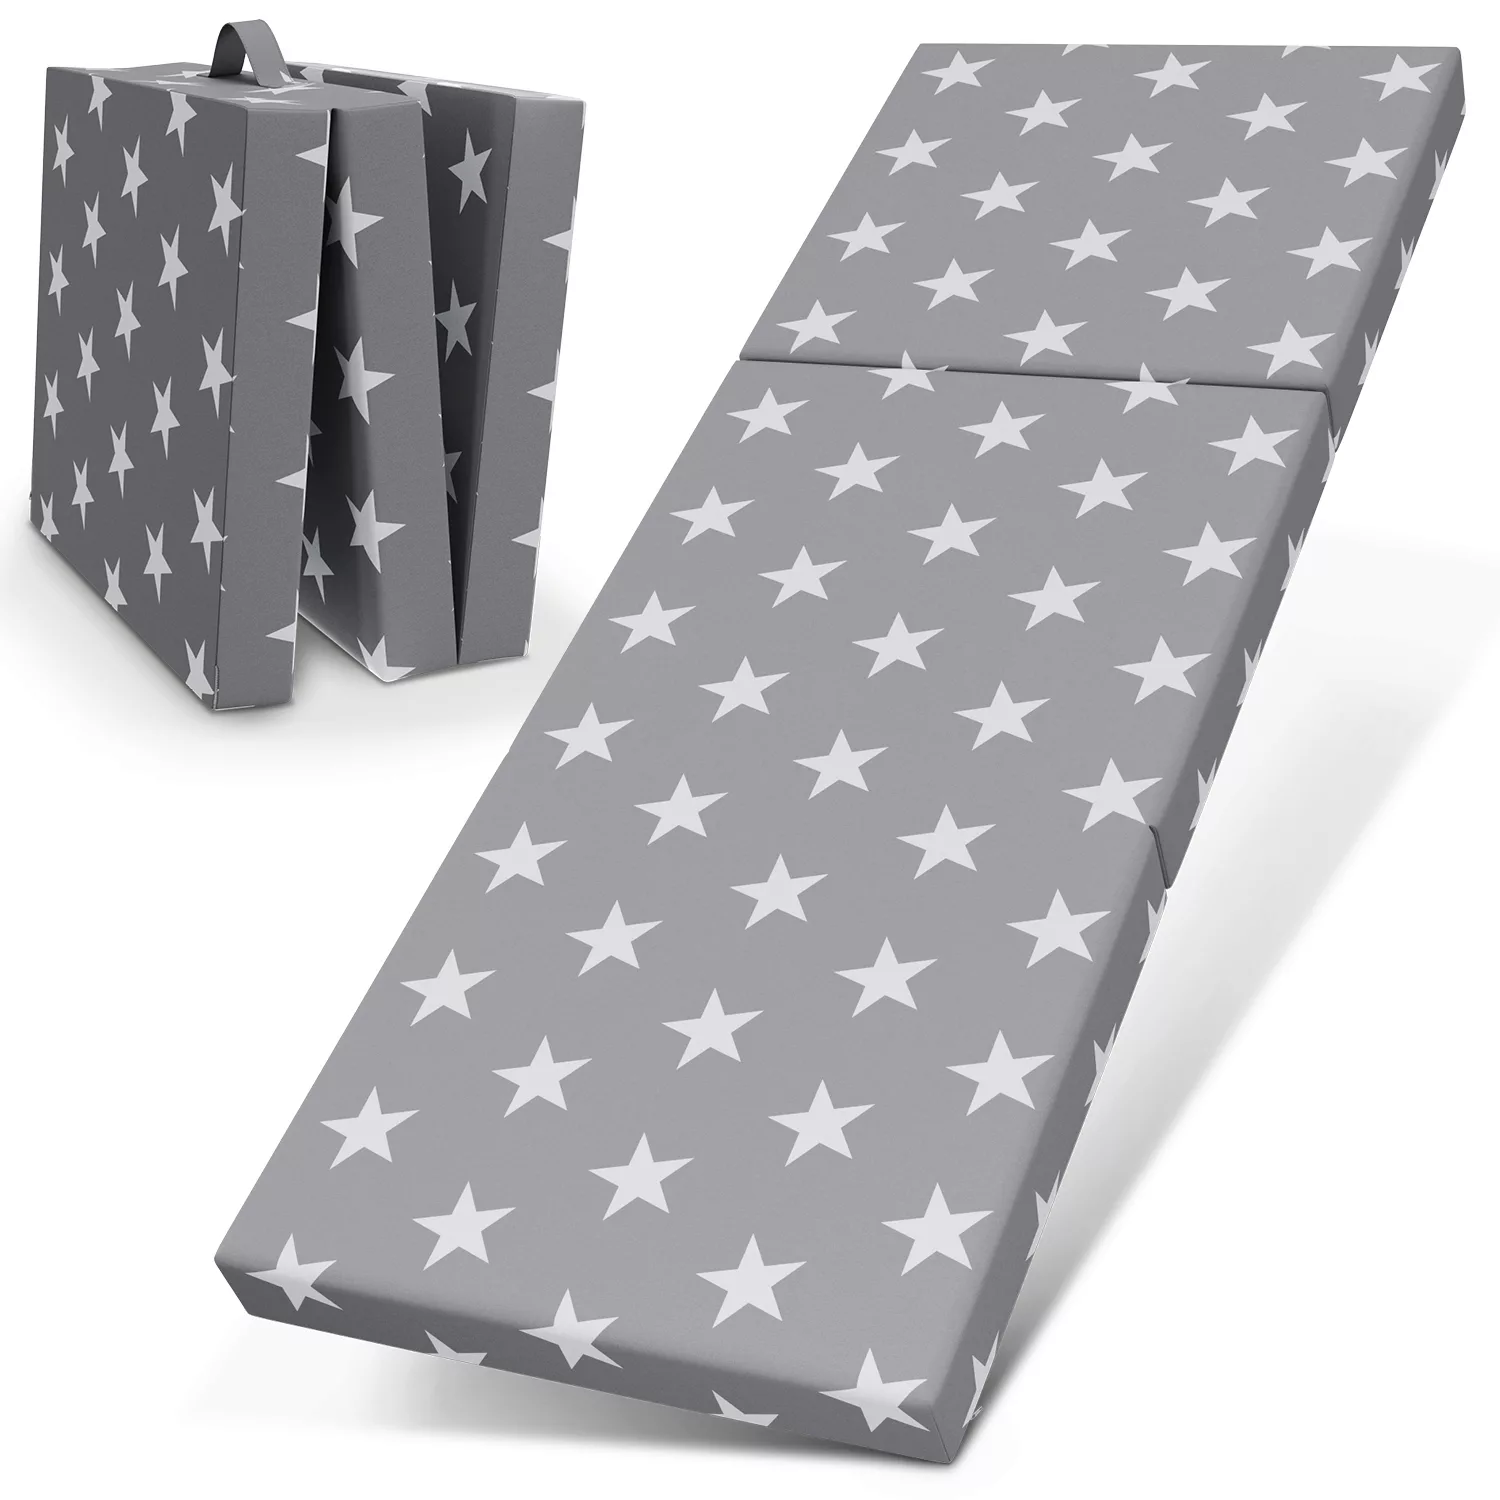 Bestschlaf Klappmatratze, 70x190x9 cm, Star-Motiv, grau günstig online kaufen